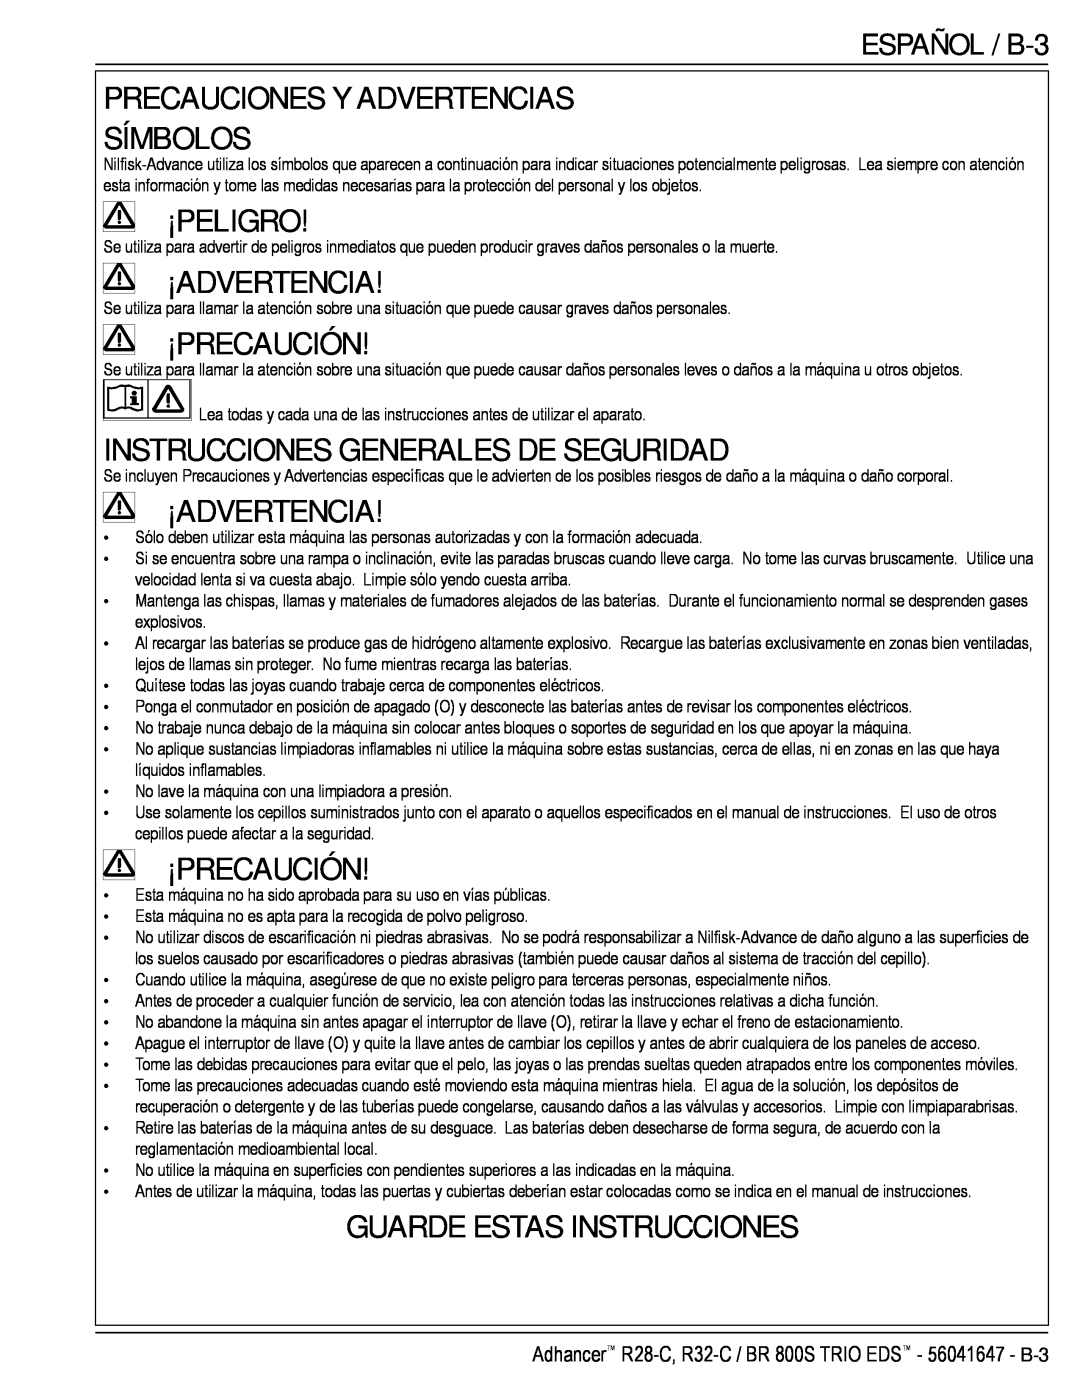 Nilfisk-Advance America 56316025 (R32-C) manual Precauciones Y Advertencias Símbolos, ¡Peligro, ¡Advertencia, ¡Precaución 